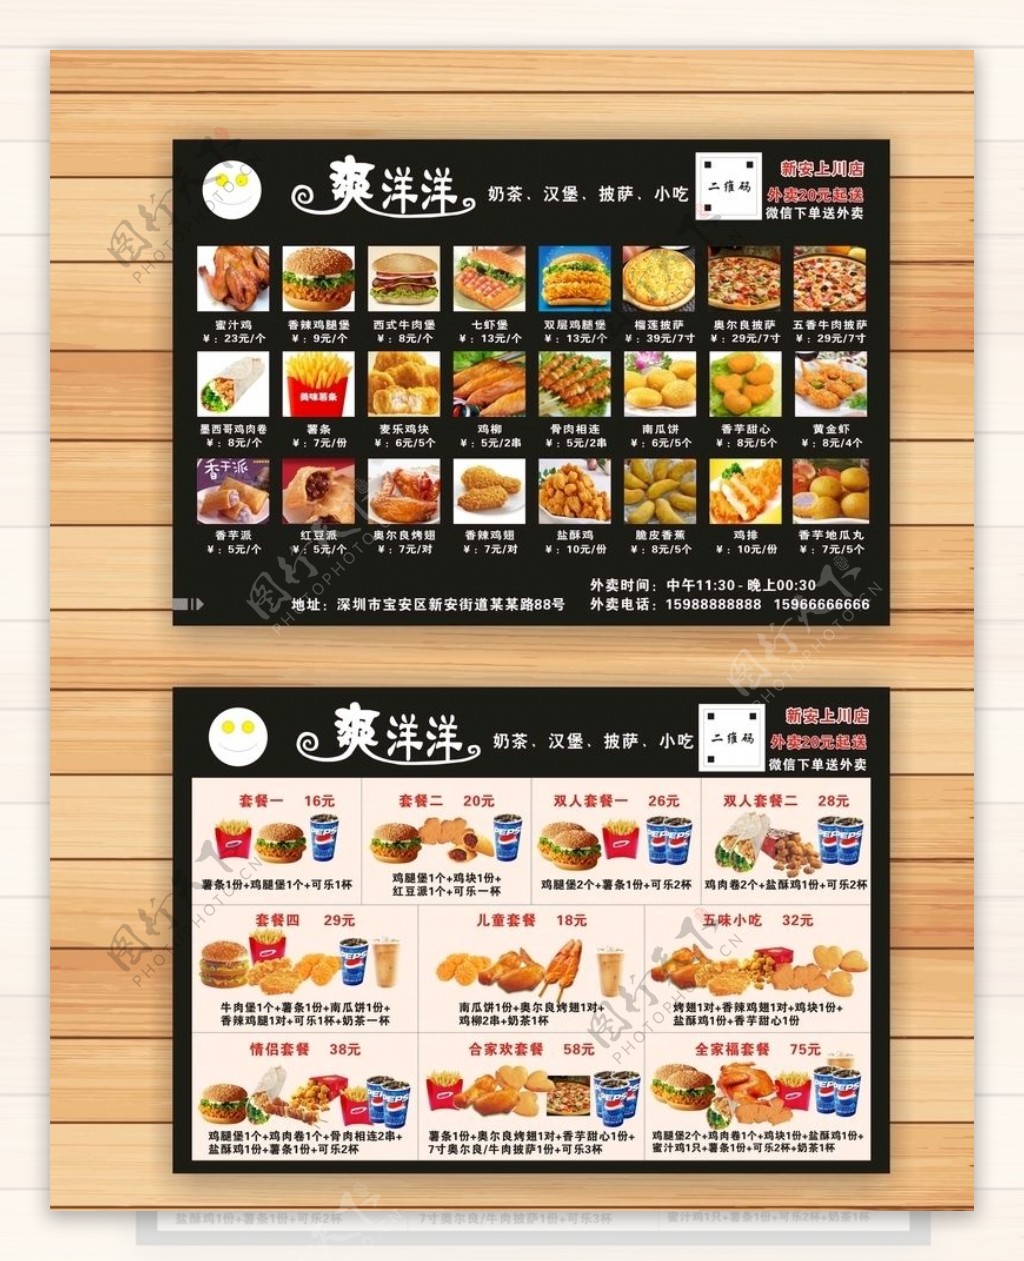 快餐店汉堡饮料菜单菜谱画册模板